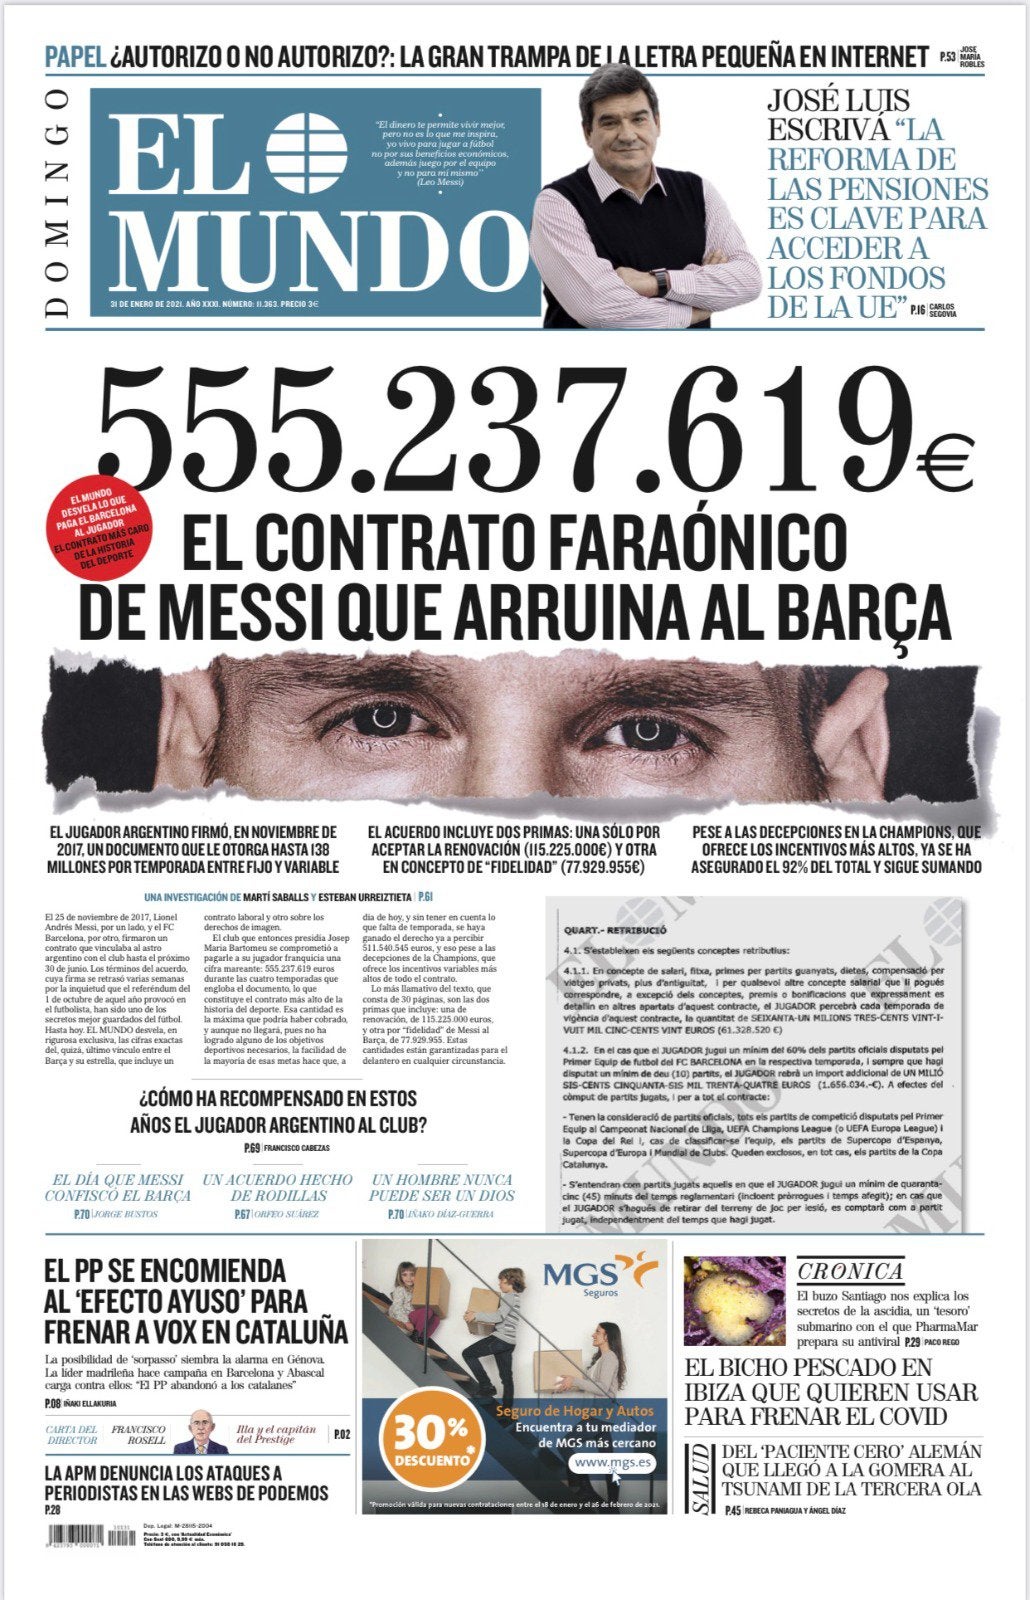 1 năm giông bão của Messi: Bị chủ tịch lừa, bạn thân ra đi, lộ hợp đồng - Ảnh 5.